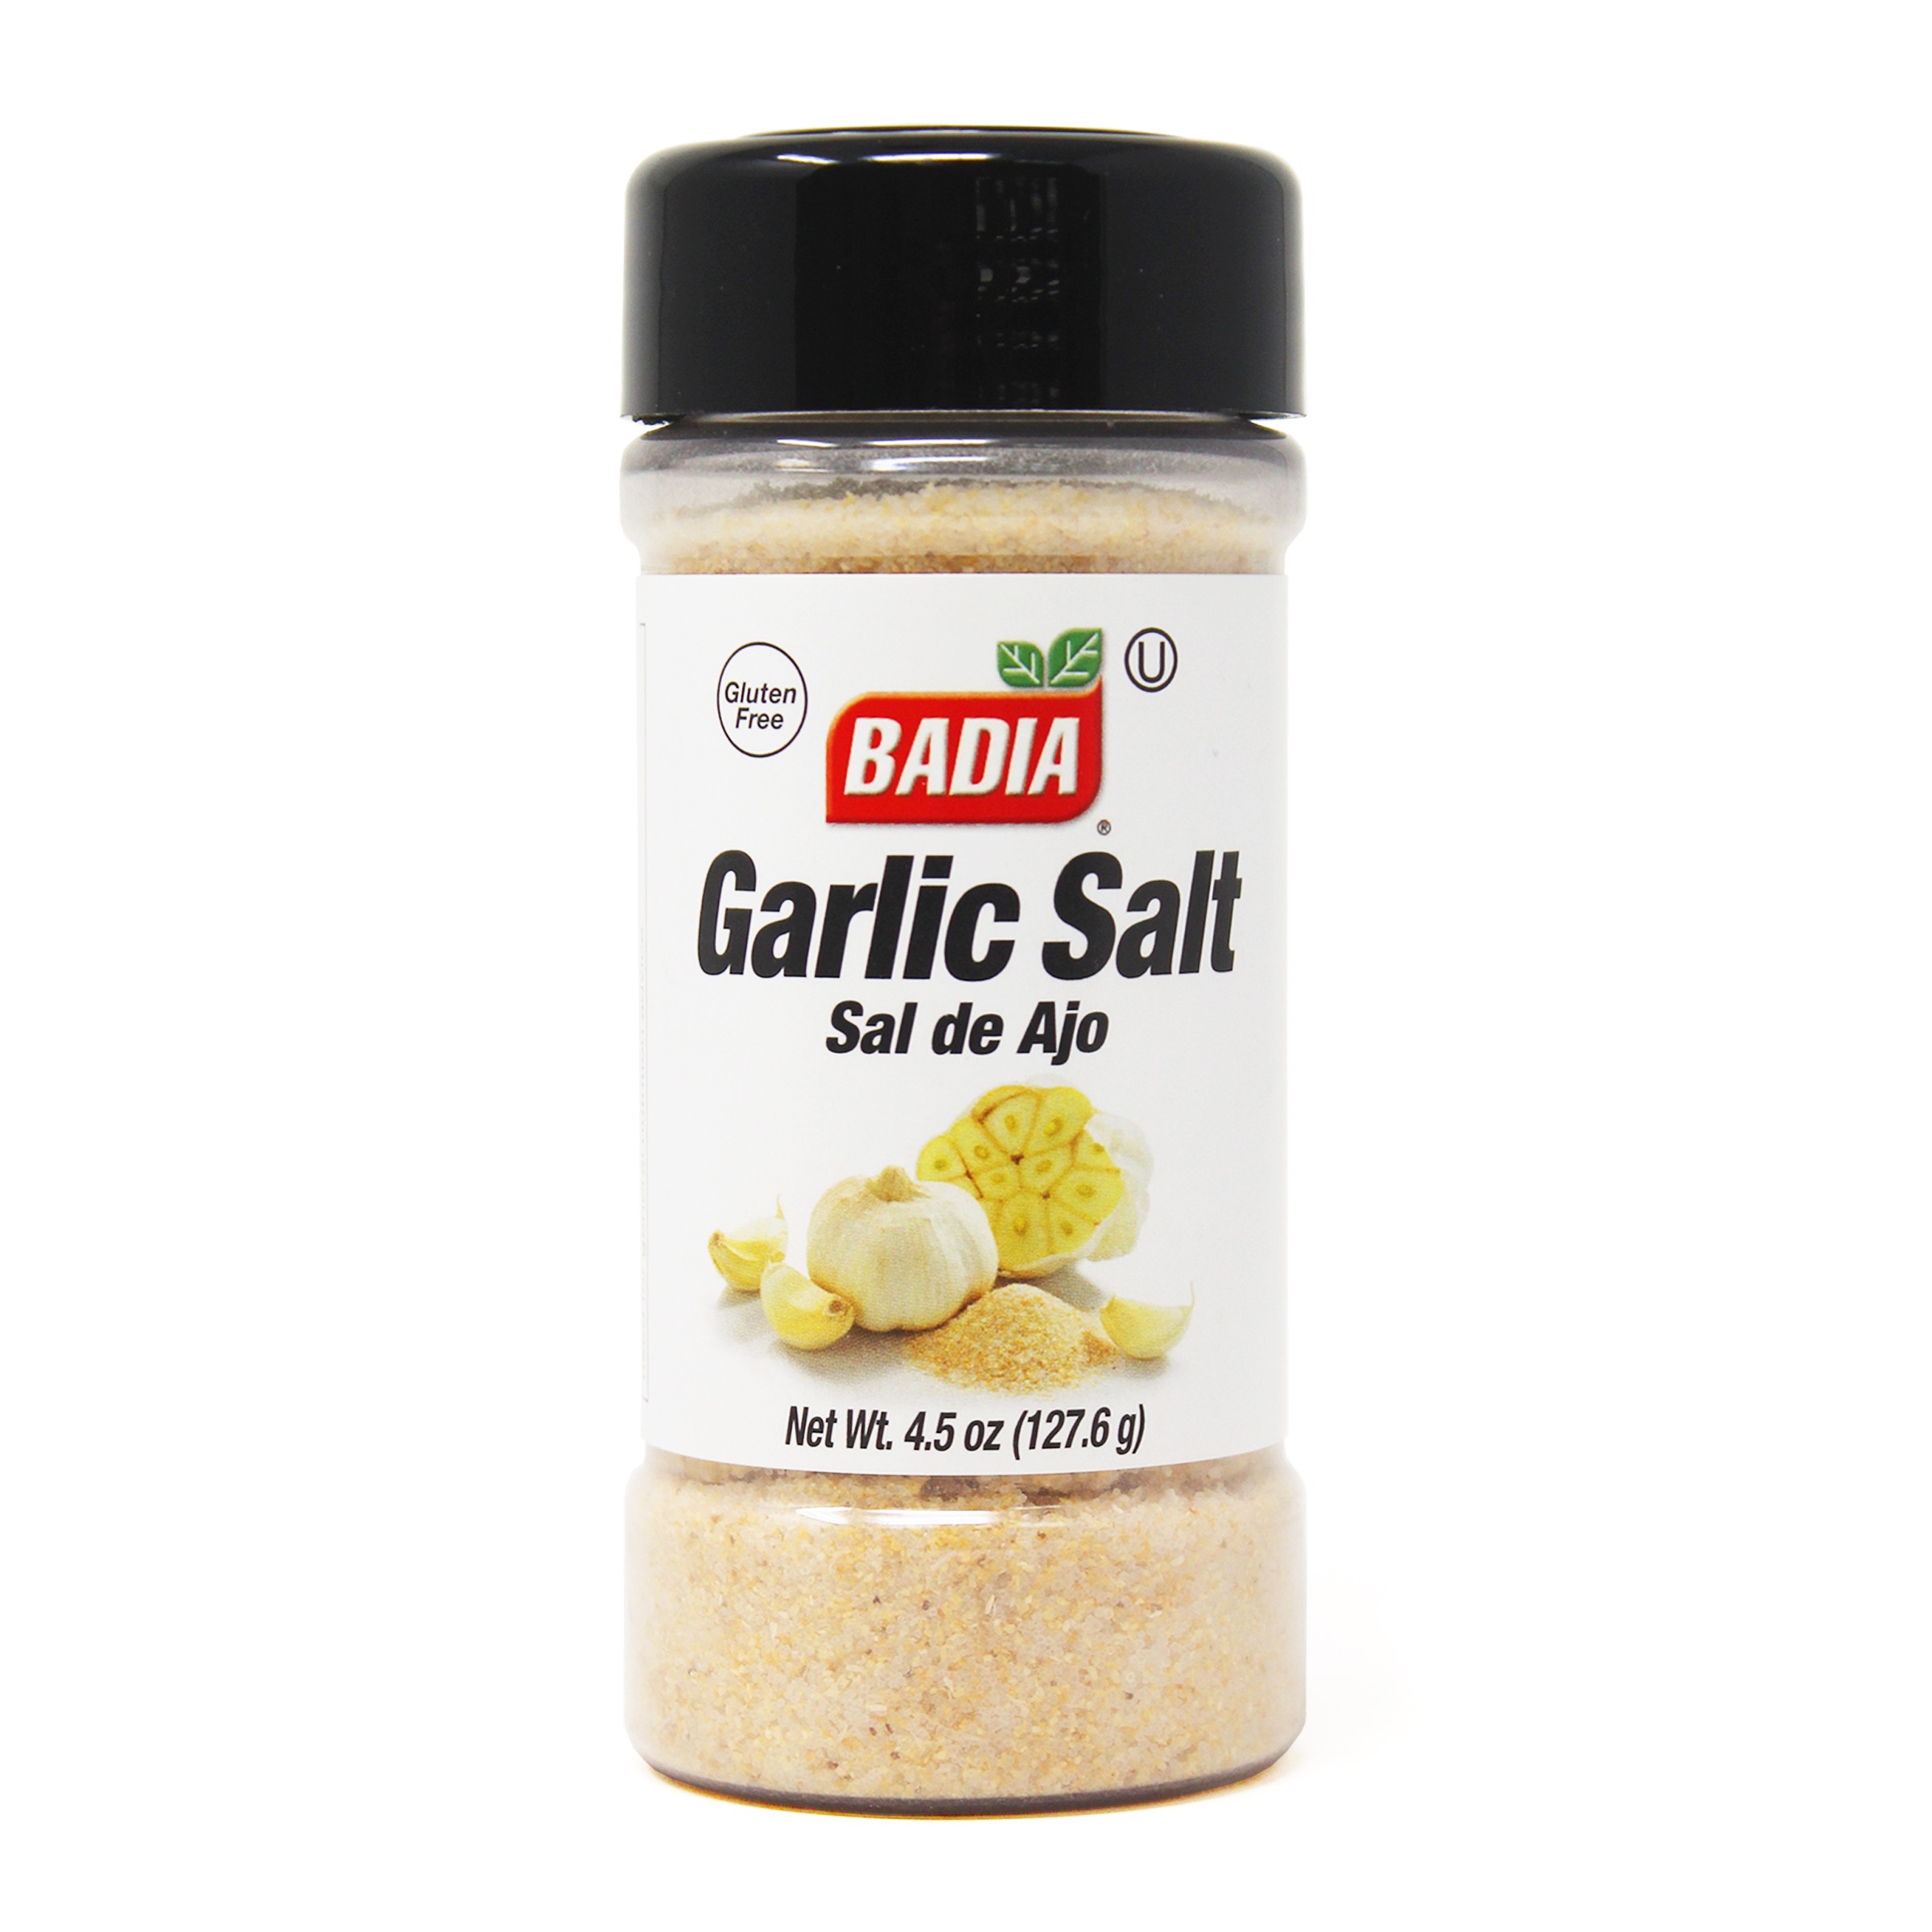 Badia Sea Salt 4.25 oz. –